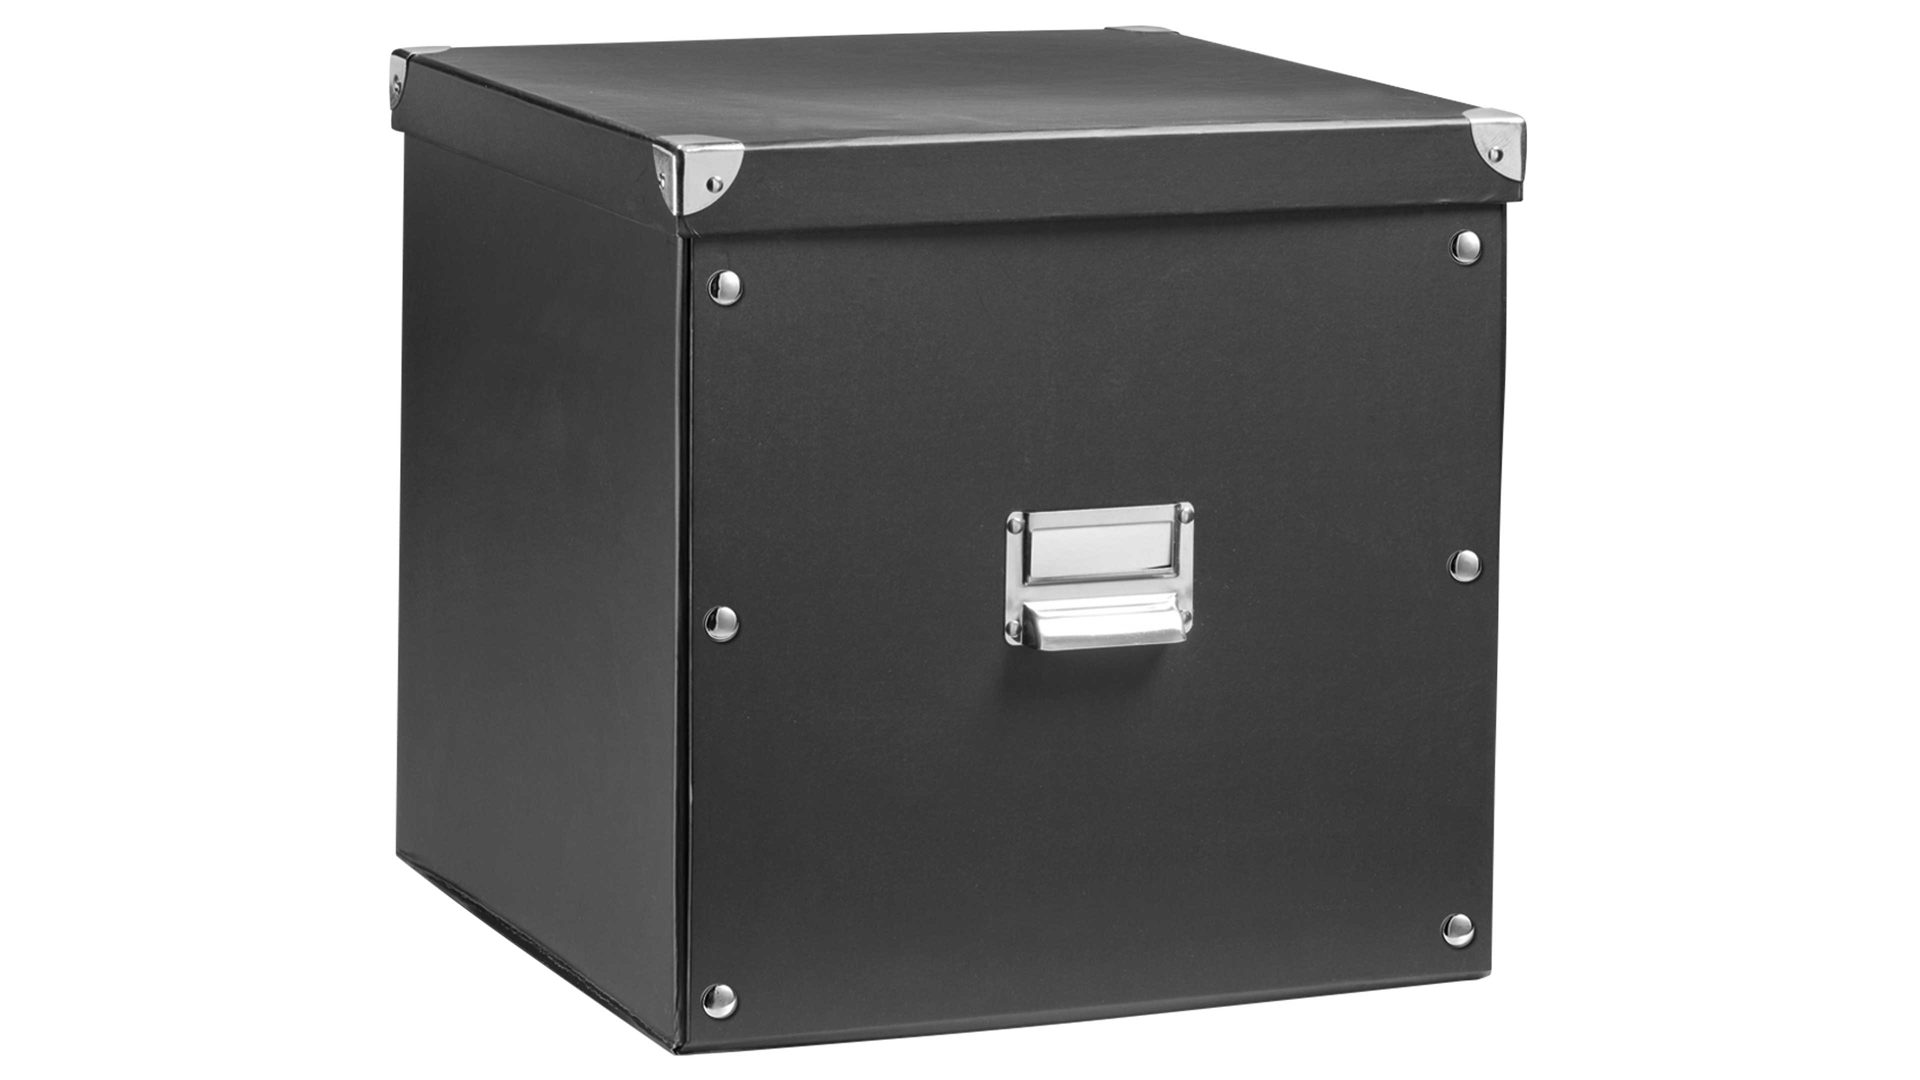 Aufbewahrungsbox Zeller present aus Karton / Papier / Pappe in Schwarz zeller Aufbewahrungsbox schwarze Pappe - ca. 33 x 33 cm